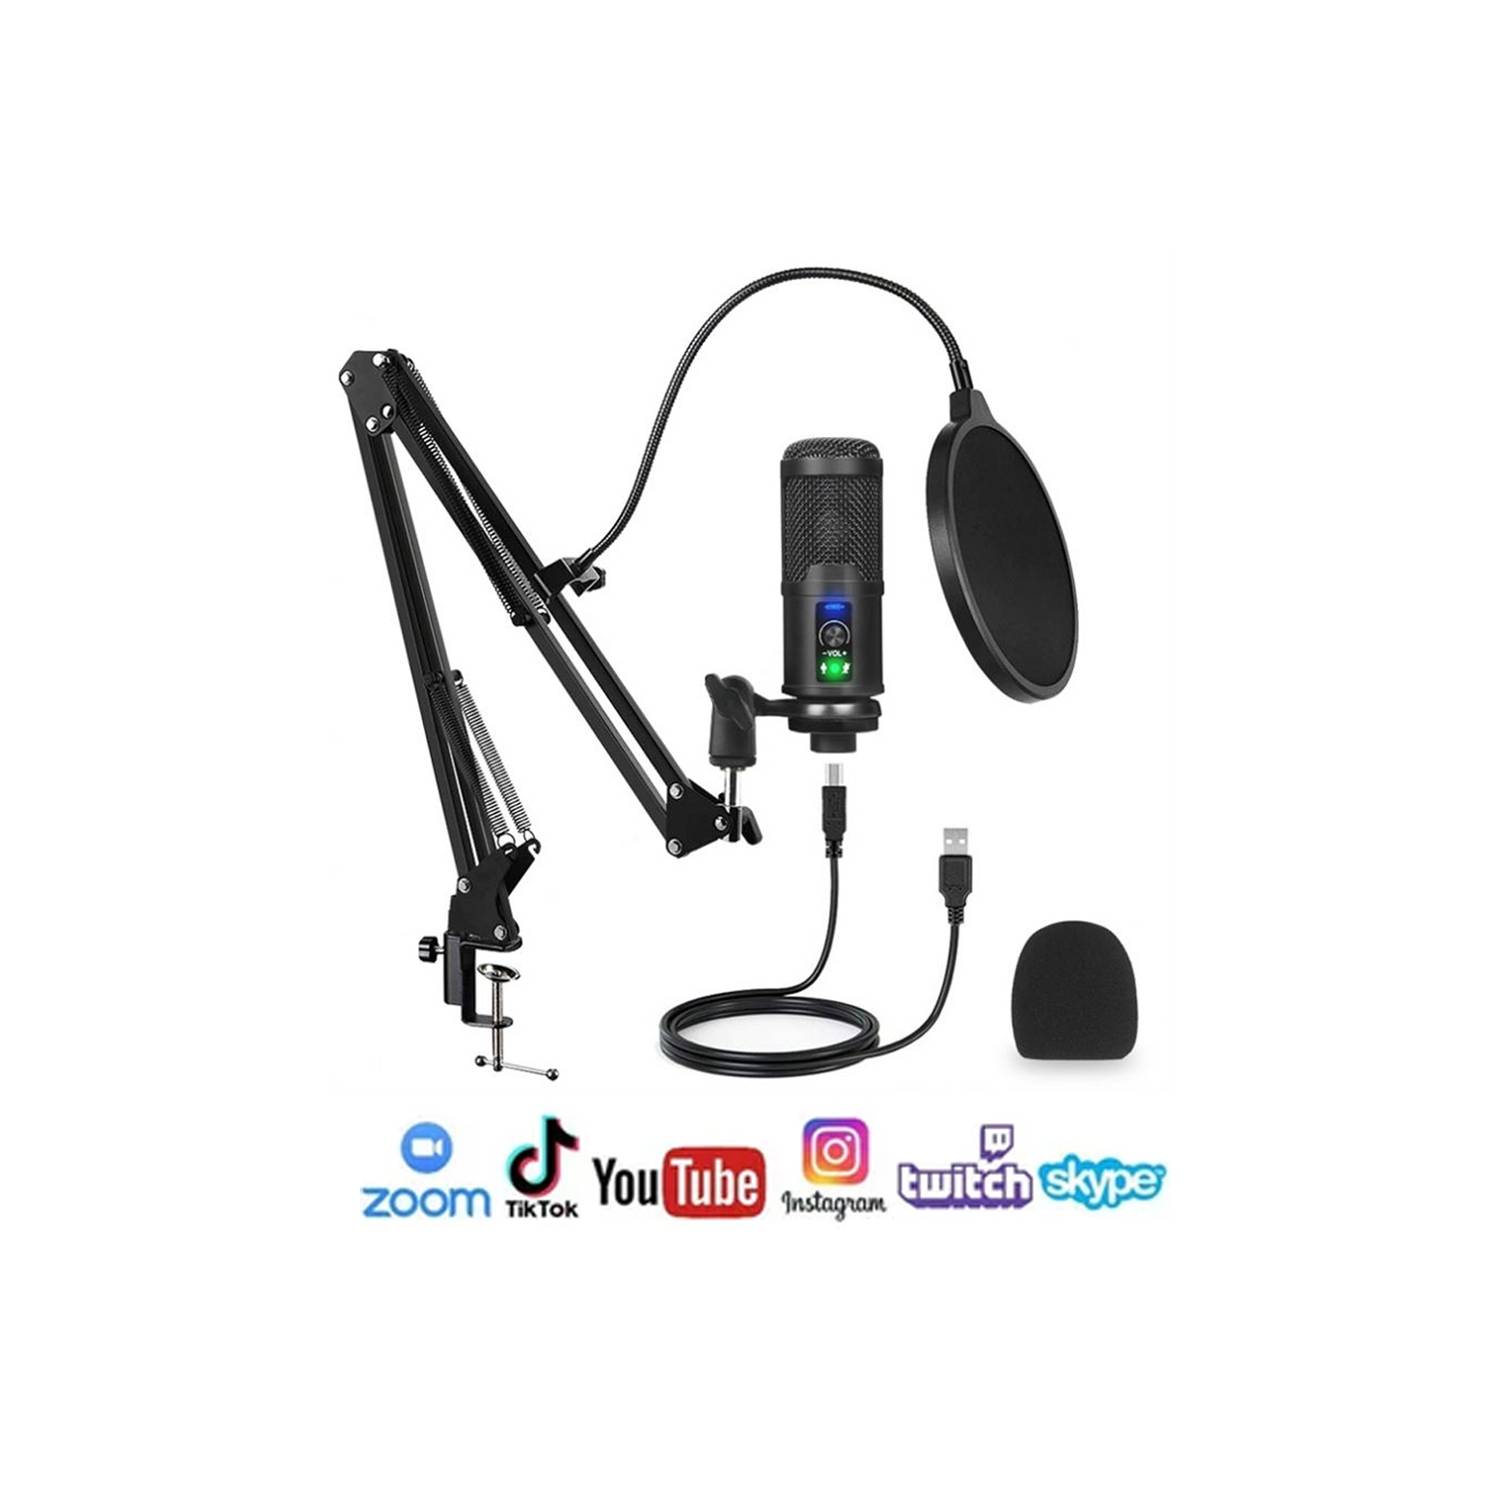 Podcasting Youtube Filtro Pop para Twitch Streaming ARCHEER Micrófono USB PC Micrófono de Condensador para Ordenador Profesional 192KHz/24bit cardioide Micrófono con Soporte de micrófono Skype 